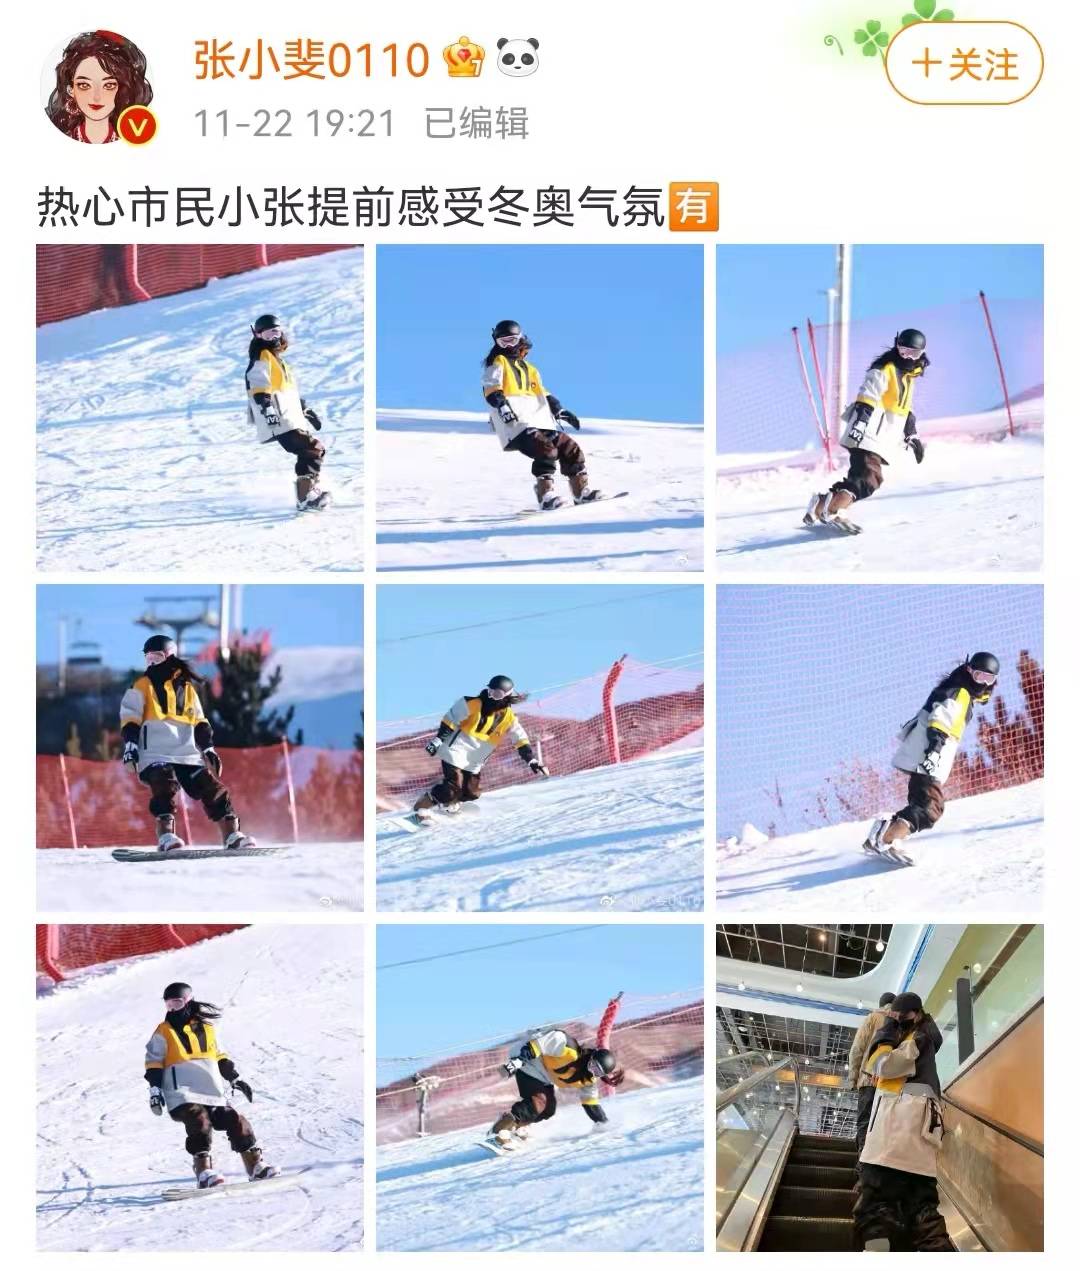 张小斐晒滑雪照却被贾玲拆台，被网友调侃是塑料姐妹花